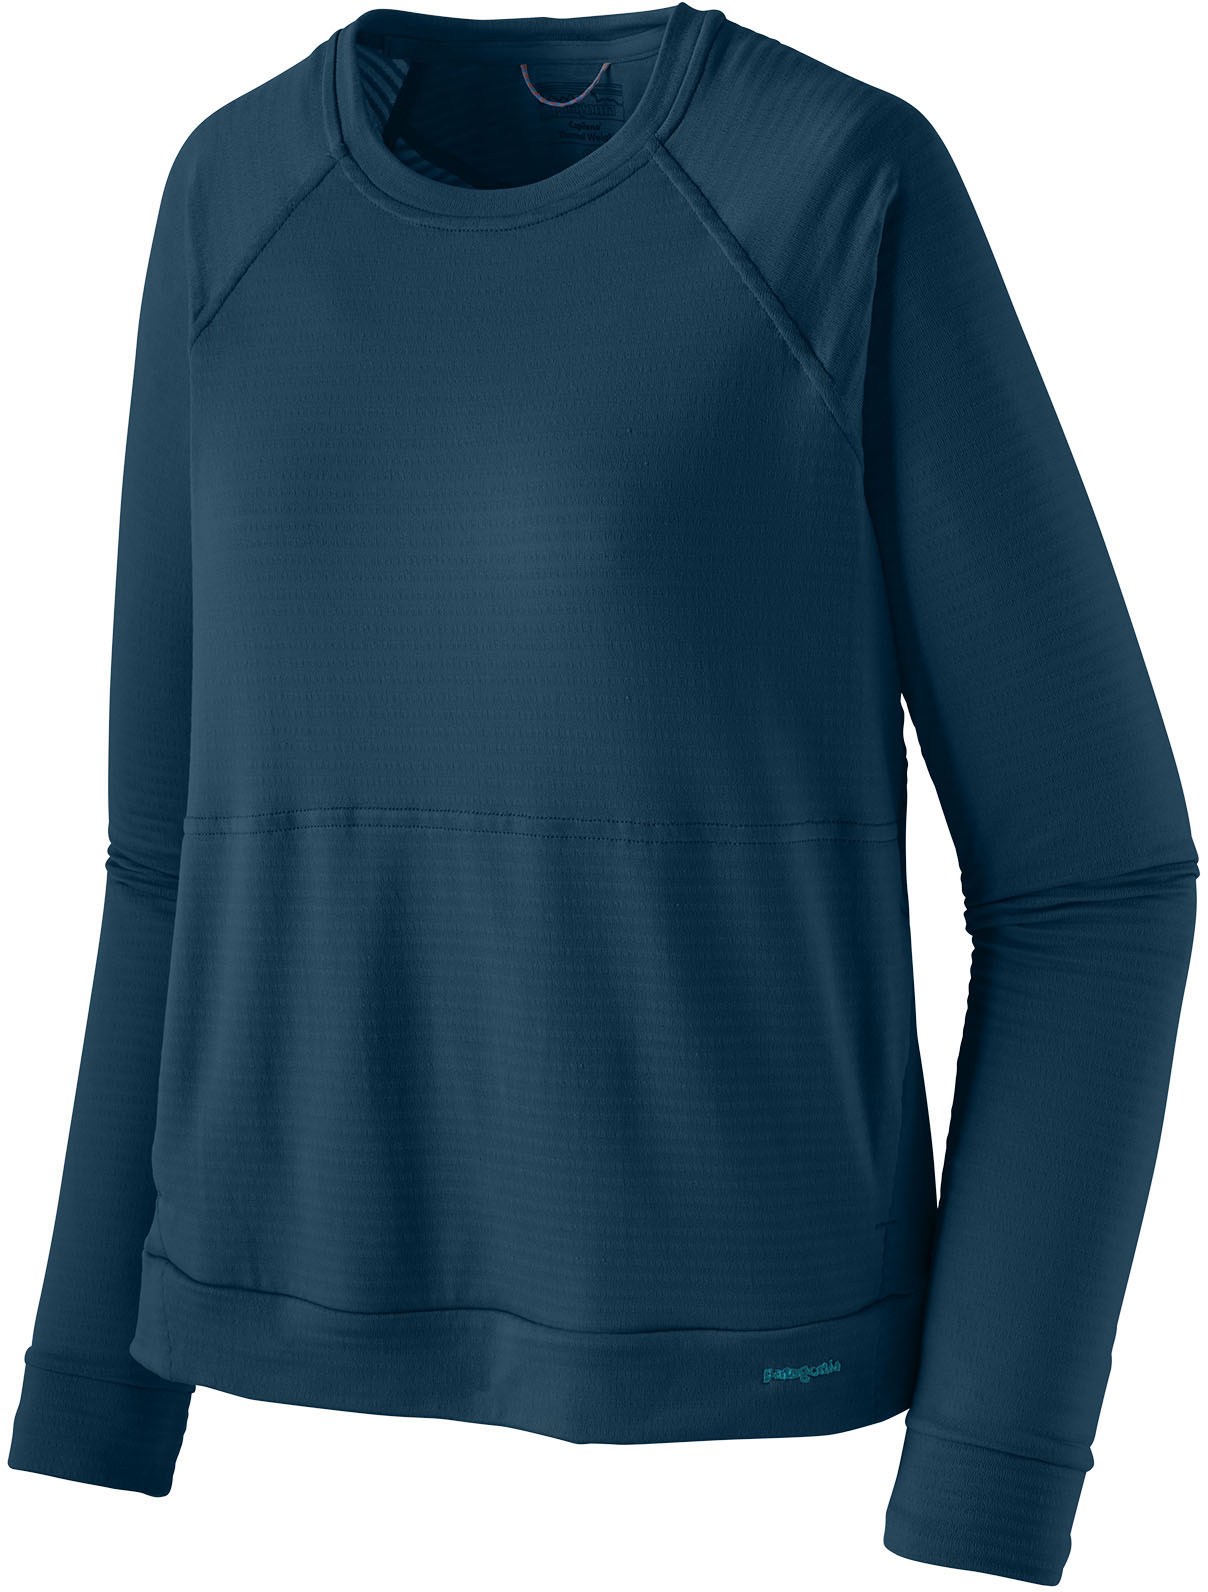 Утепленная футболка Capilene с длинными рукавами — женская Patagonia, синий топ r1 lite yulex с длинными рукавами женский patagonia черный